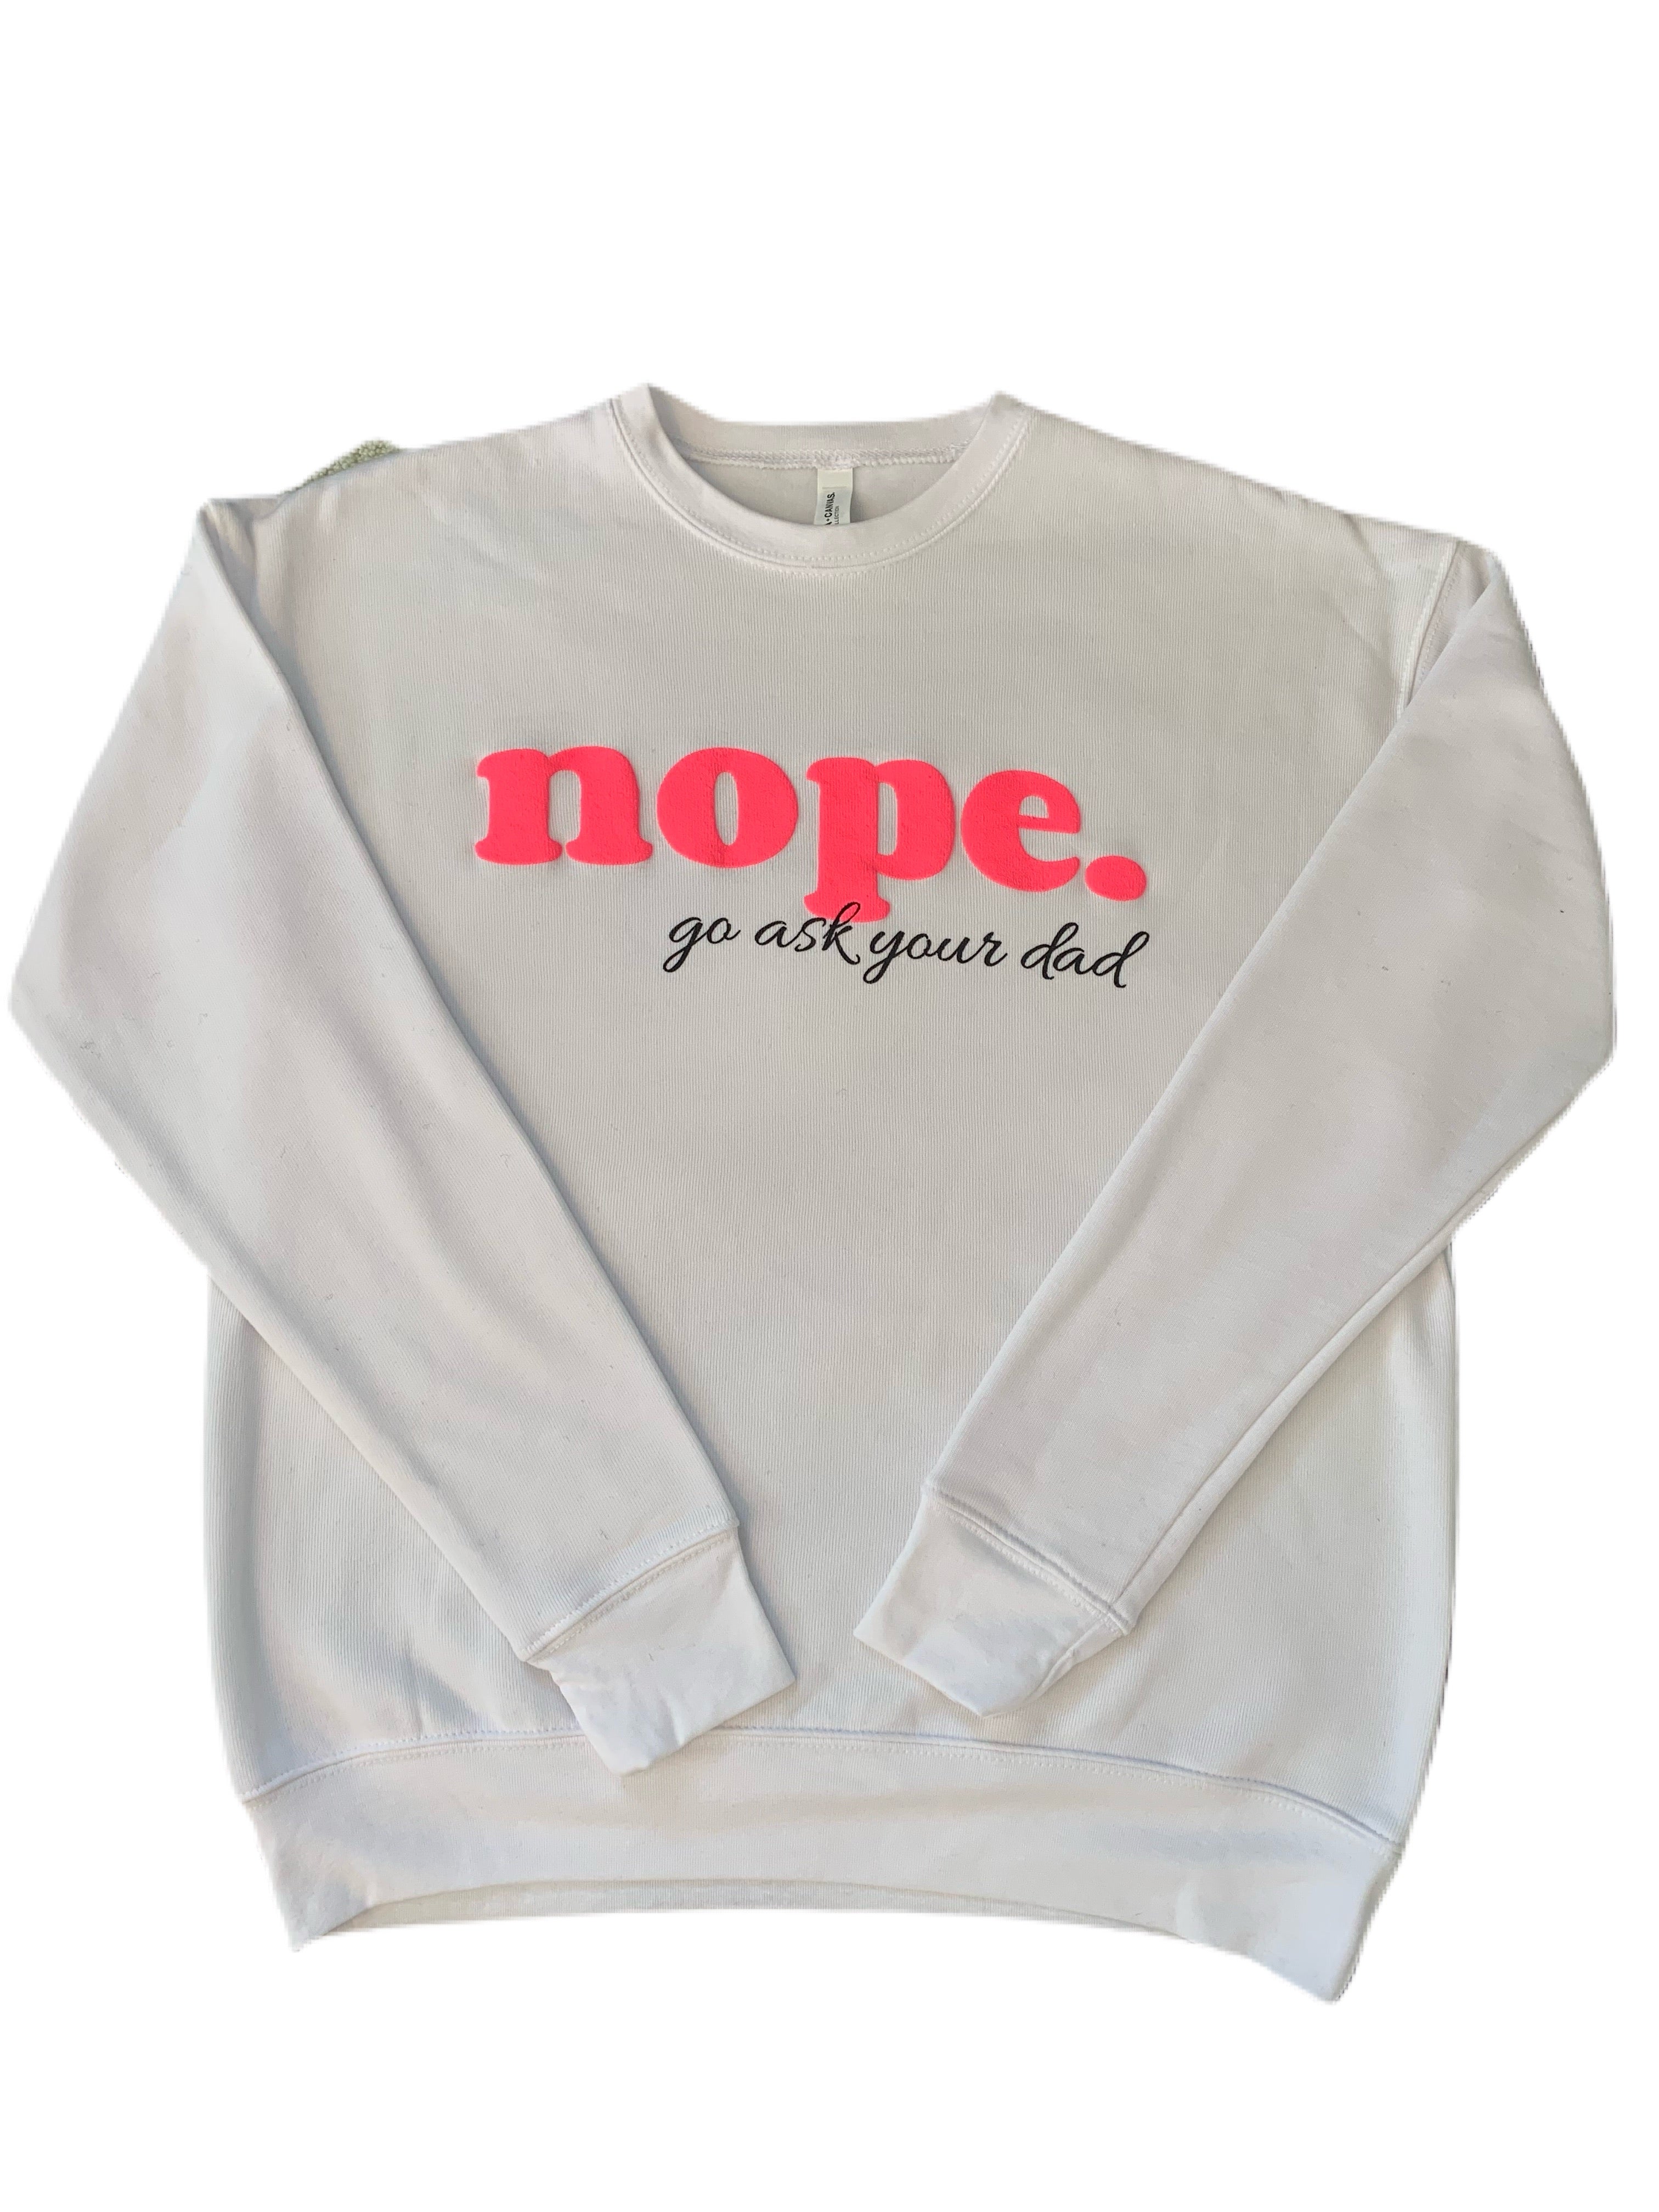 NOPE “go ask your dad” Sweatshirt (New Arrival)